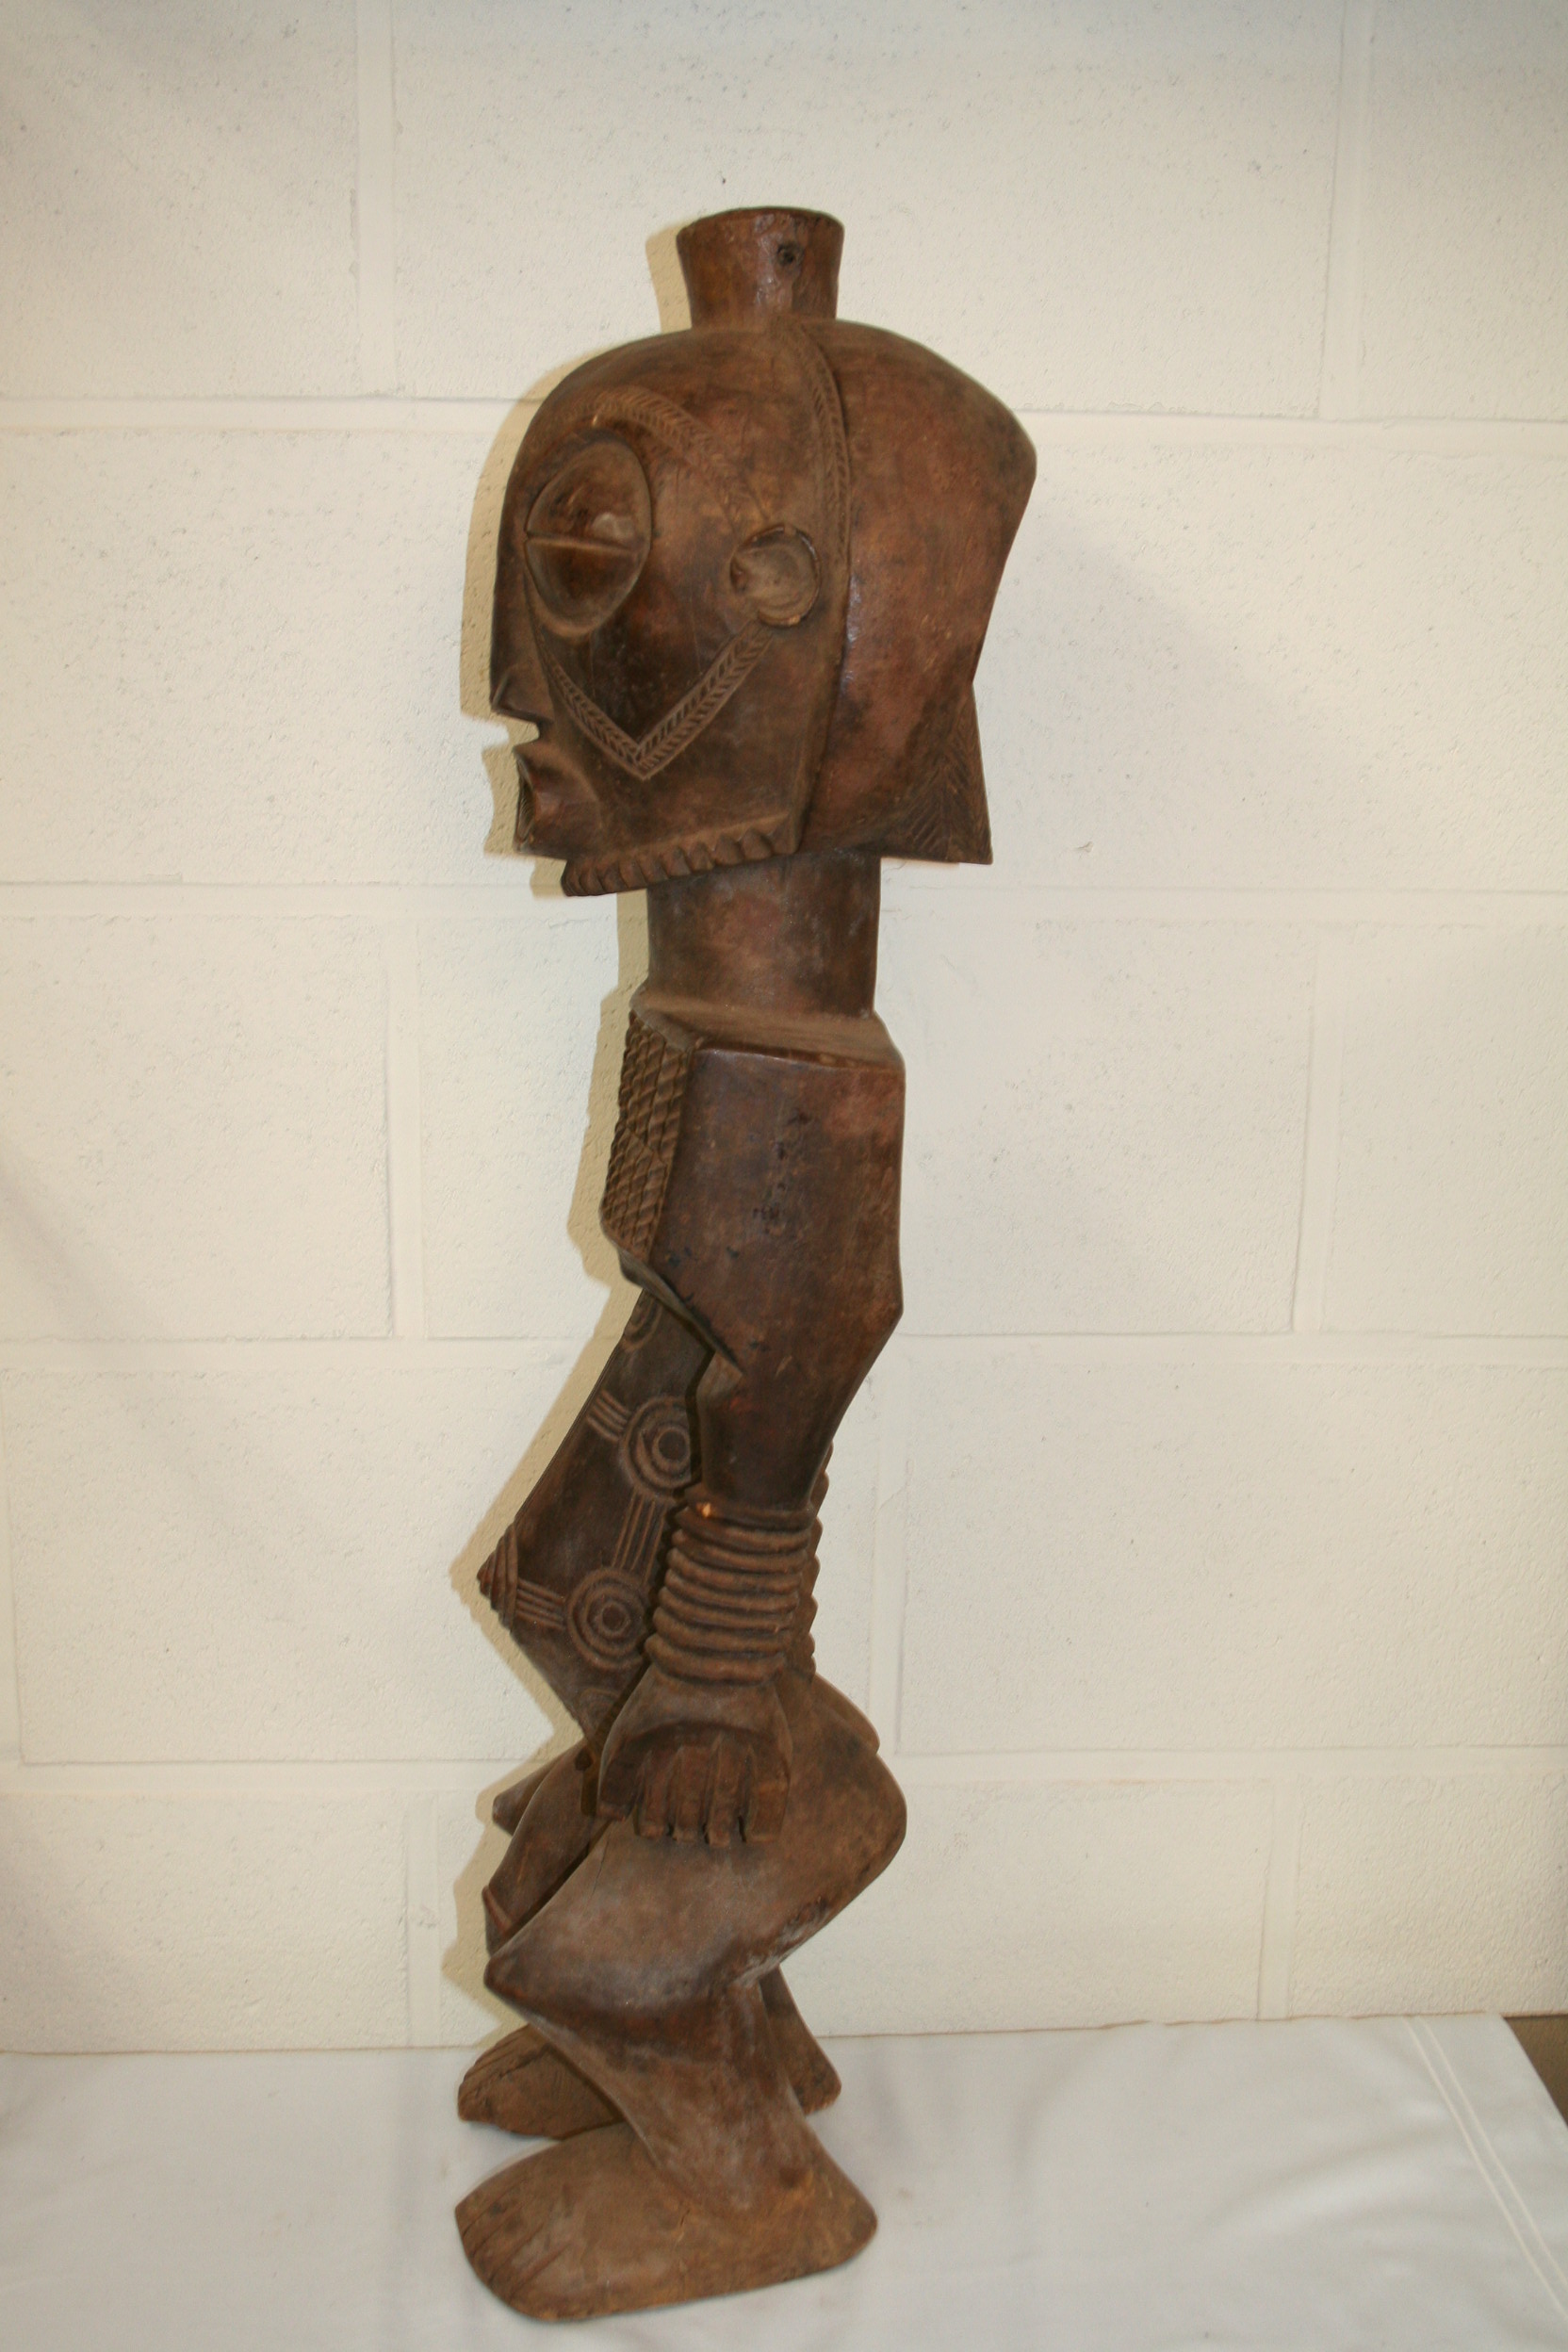 Boyo (statue 77 cm.)), d`afrique : R.D. du Congo, statuette Boyo (statue 77 cm.)), masque ancien africain Boyo (statue 77 cm.)), art du R.D. du Congo - Art Africain, collection privées Belgique. Statue africaine de la tribu des Boyo (statue 77 cm.)), provenant du R.D. du Congo, 1616 Très belle statue Boyo h.77cm.Une tête ronde de taille exagérée avec des yeux globuleux,des petites jambes.Les motifs circulaires sont omniprésent dans les statues Boyo Les statues sont gardées dans des cases spéciales et montrées par serie de cinq ou plus et étaient placées en rang
milieu de 20eme sc.. art,culture,masque,statue,statuette,pot,ivoire,exposition,expo,masque original,masques,statues,statuettes,pots,expositions,expo,masques originaux,collectionneur d`art,art africain,culture africaine,masque africain,statue africaine,statuette africaine,pot africain,ivoire africain,exposition africain,expo africain,masque origina africainl,masques africains,statues africaines,statuettes africaines,pots africains,expositions africaines,expo africaines,masques originaux  africains,collectionneur d`art africain